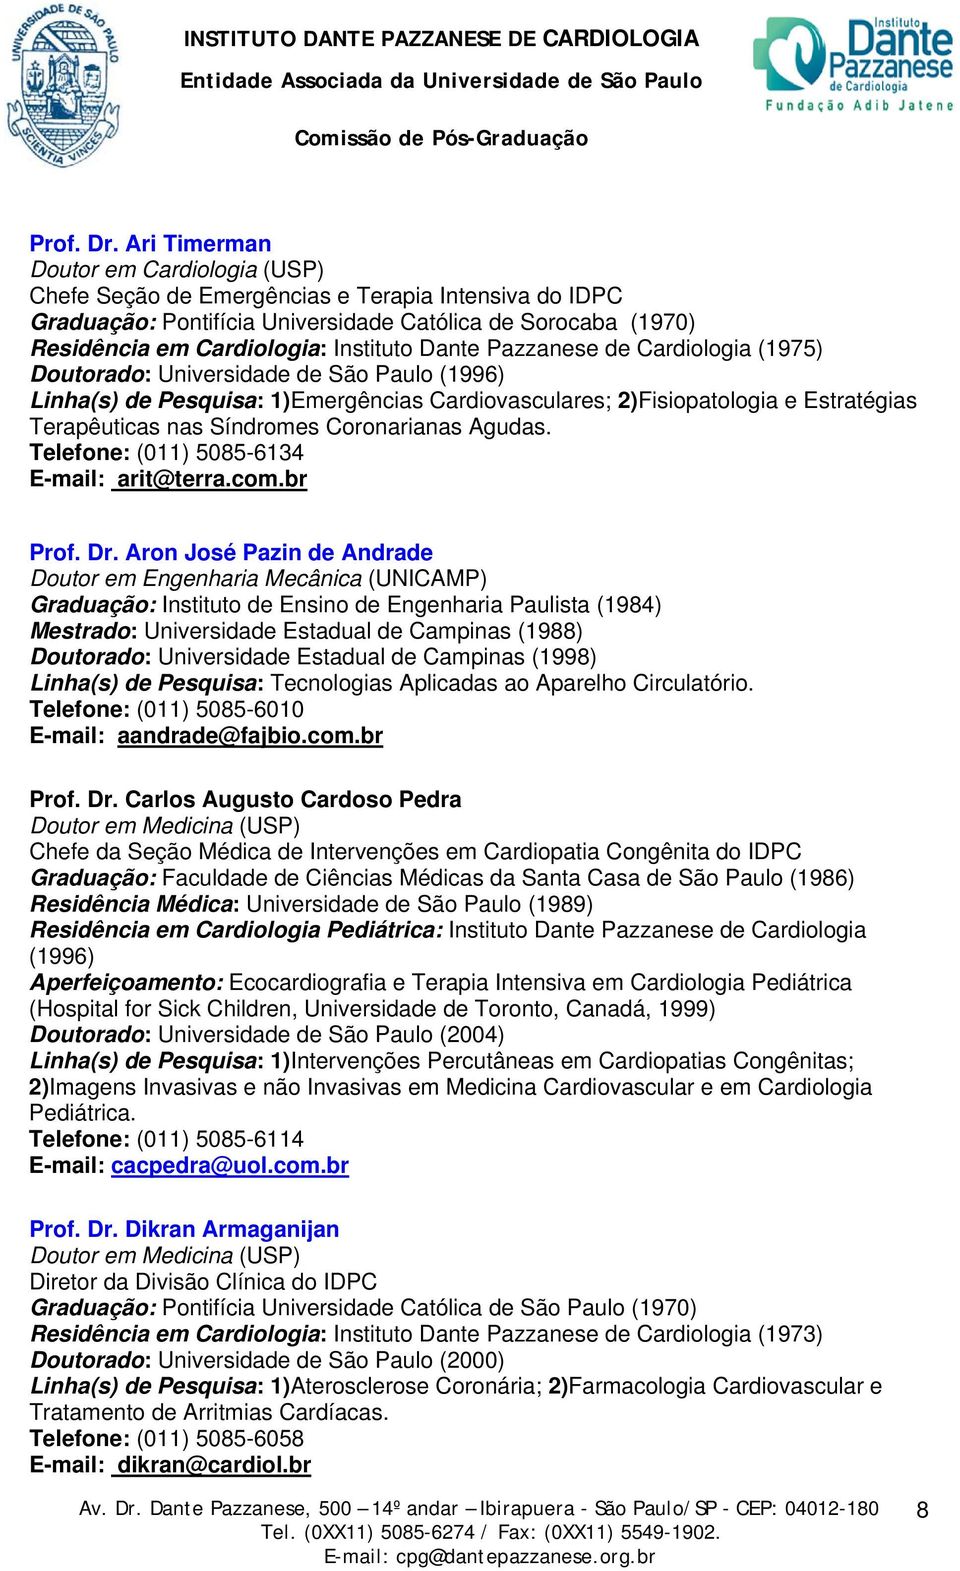 Dante Pazzanese de Cardiologia (1975) Doutorado: Universidade de São Paulo (1996) Linha(s) de Pesquisa: 1)Emergências Cardiovasculares; 2)Fisiopatologia e Estratégias Terapêuticas nas Síndromes